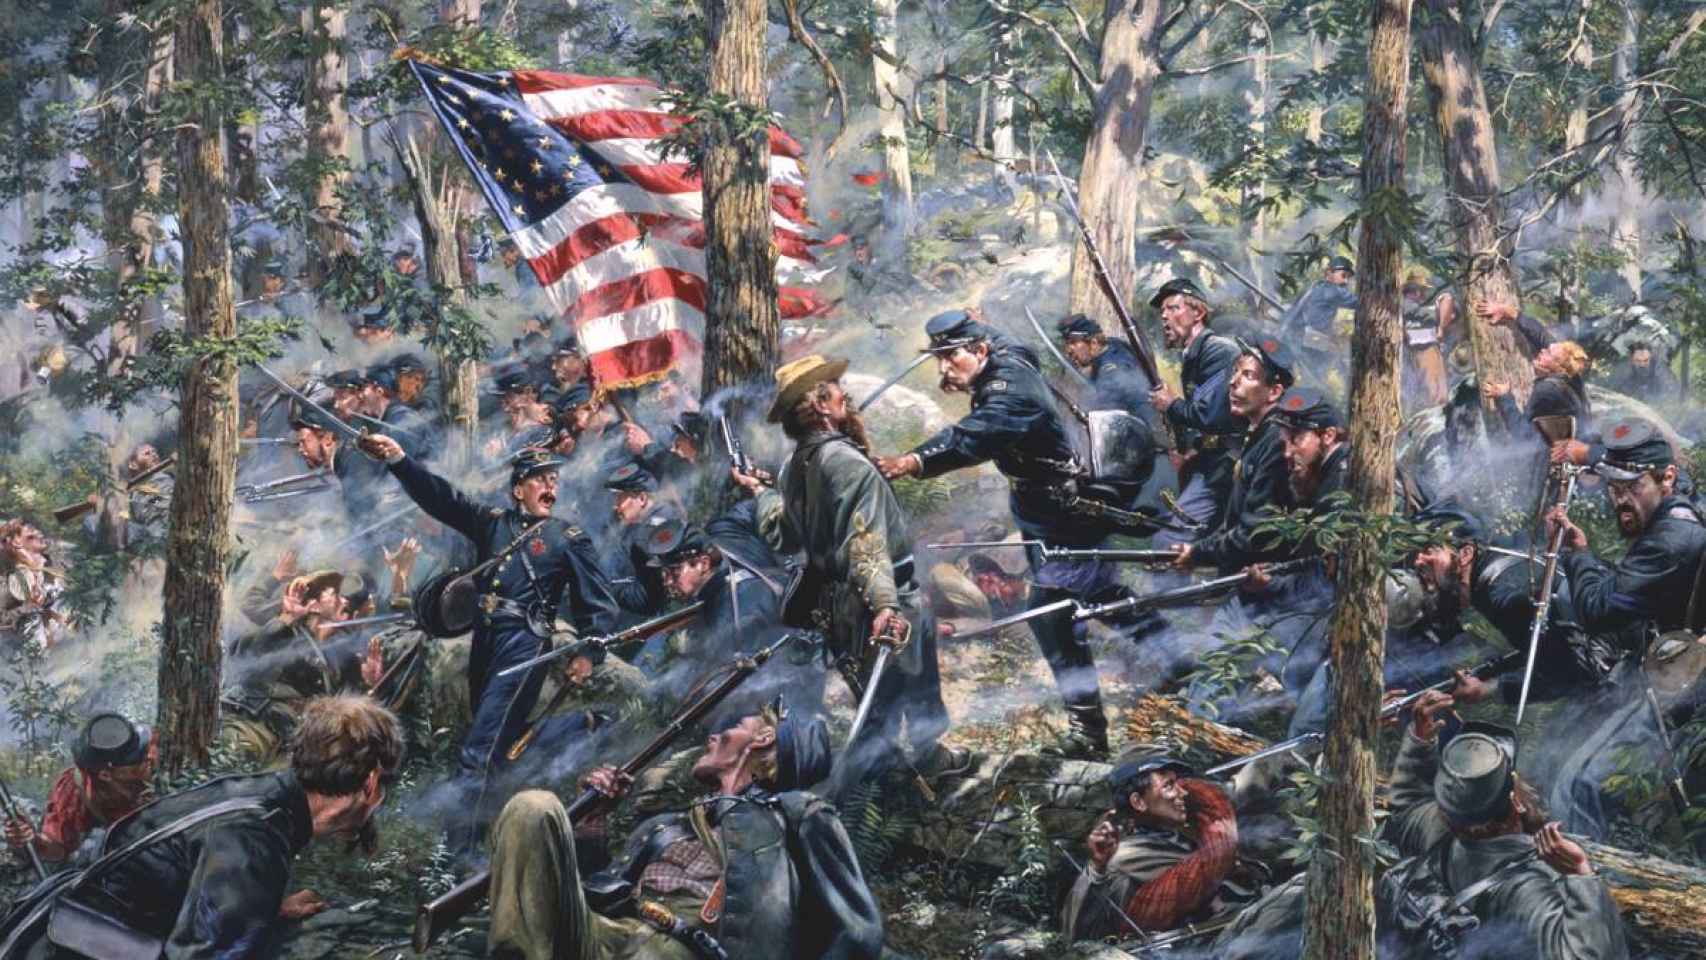 Una escena de la batalla de Gettysburg, pintada por el artista Don Troiani.